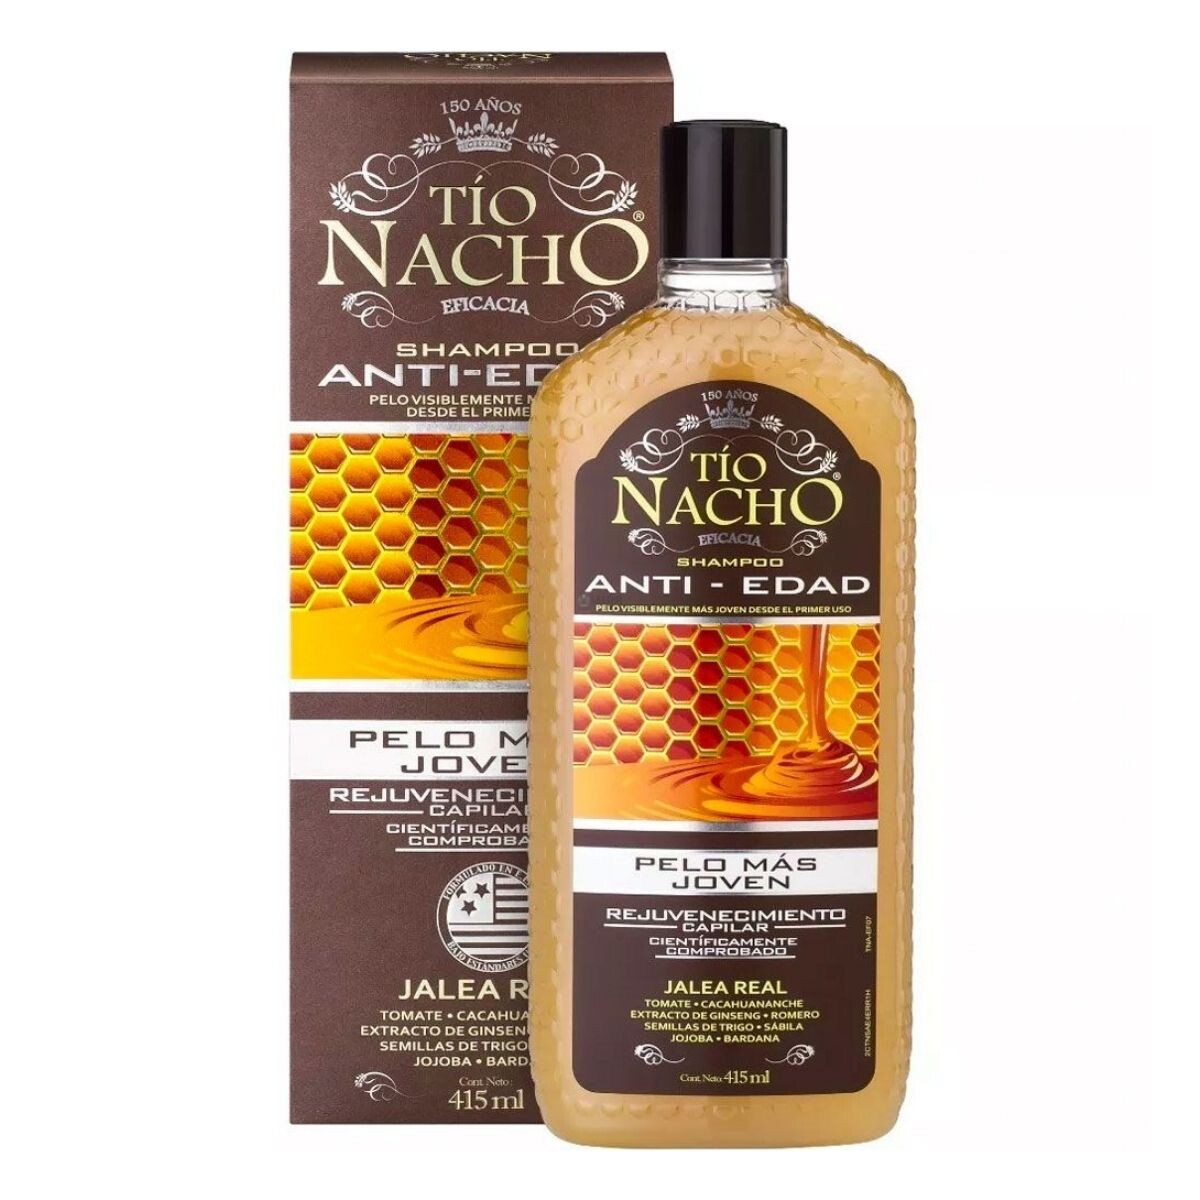 Shampoo Tío Nacho Anti-Edad 415 ML 